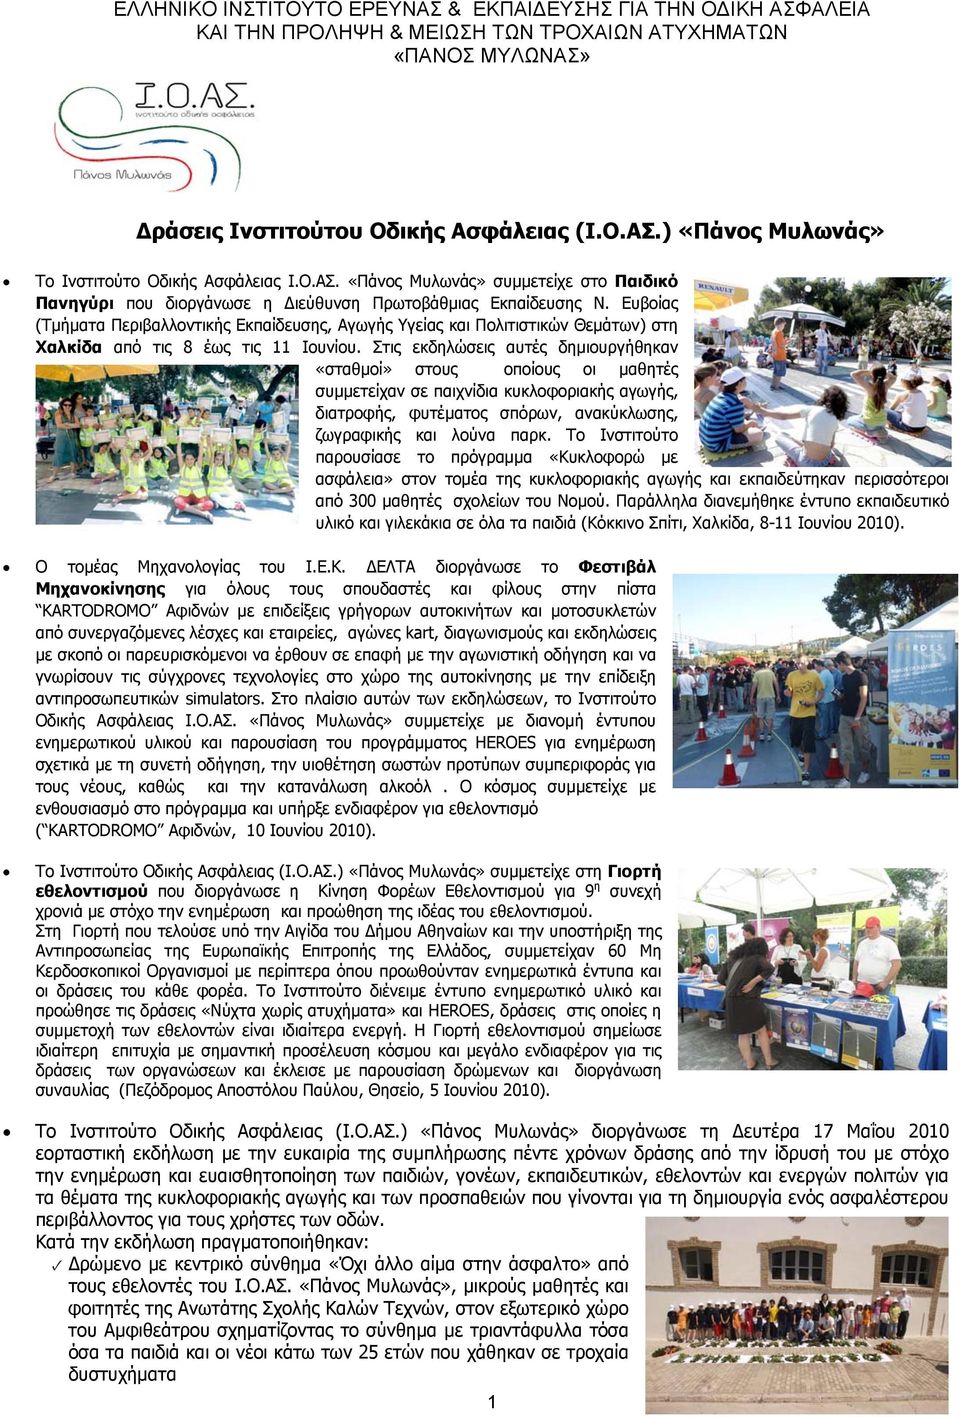 Ευβοίας (Τμήματα Περιβαλλοντικής Εκπαίδευσης, Αγωγής Υγείας και Πολιτιστικών Θεμάτων) στη Χαλκίδα από τις 8 έως τις 11 Ιουνίου.